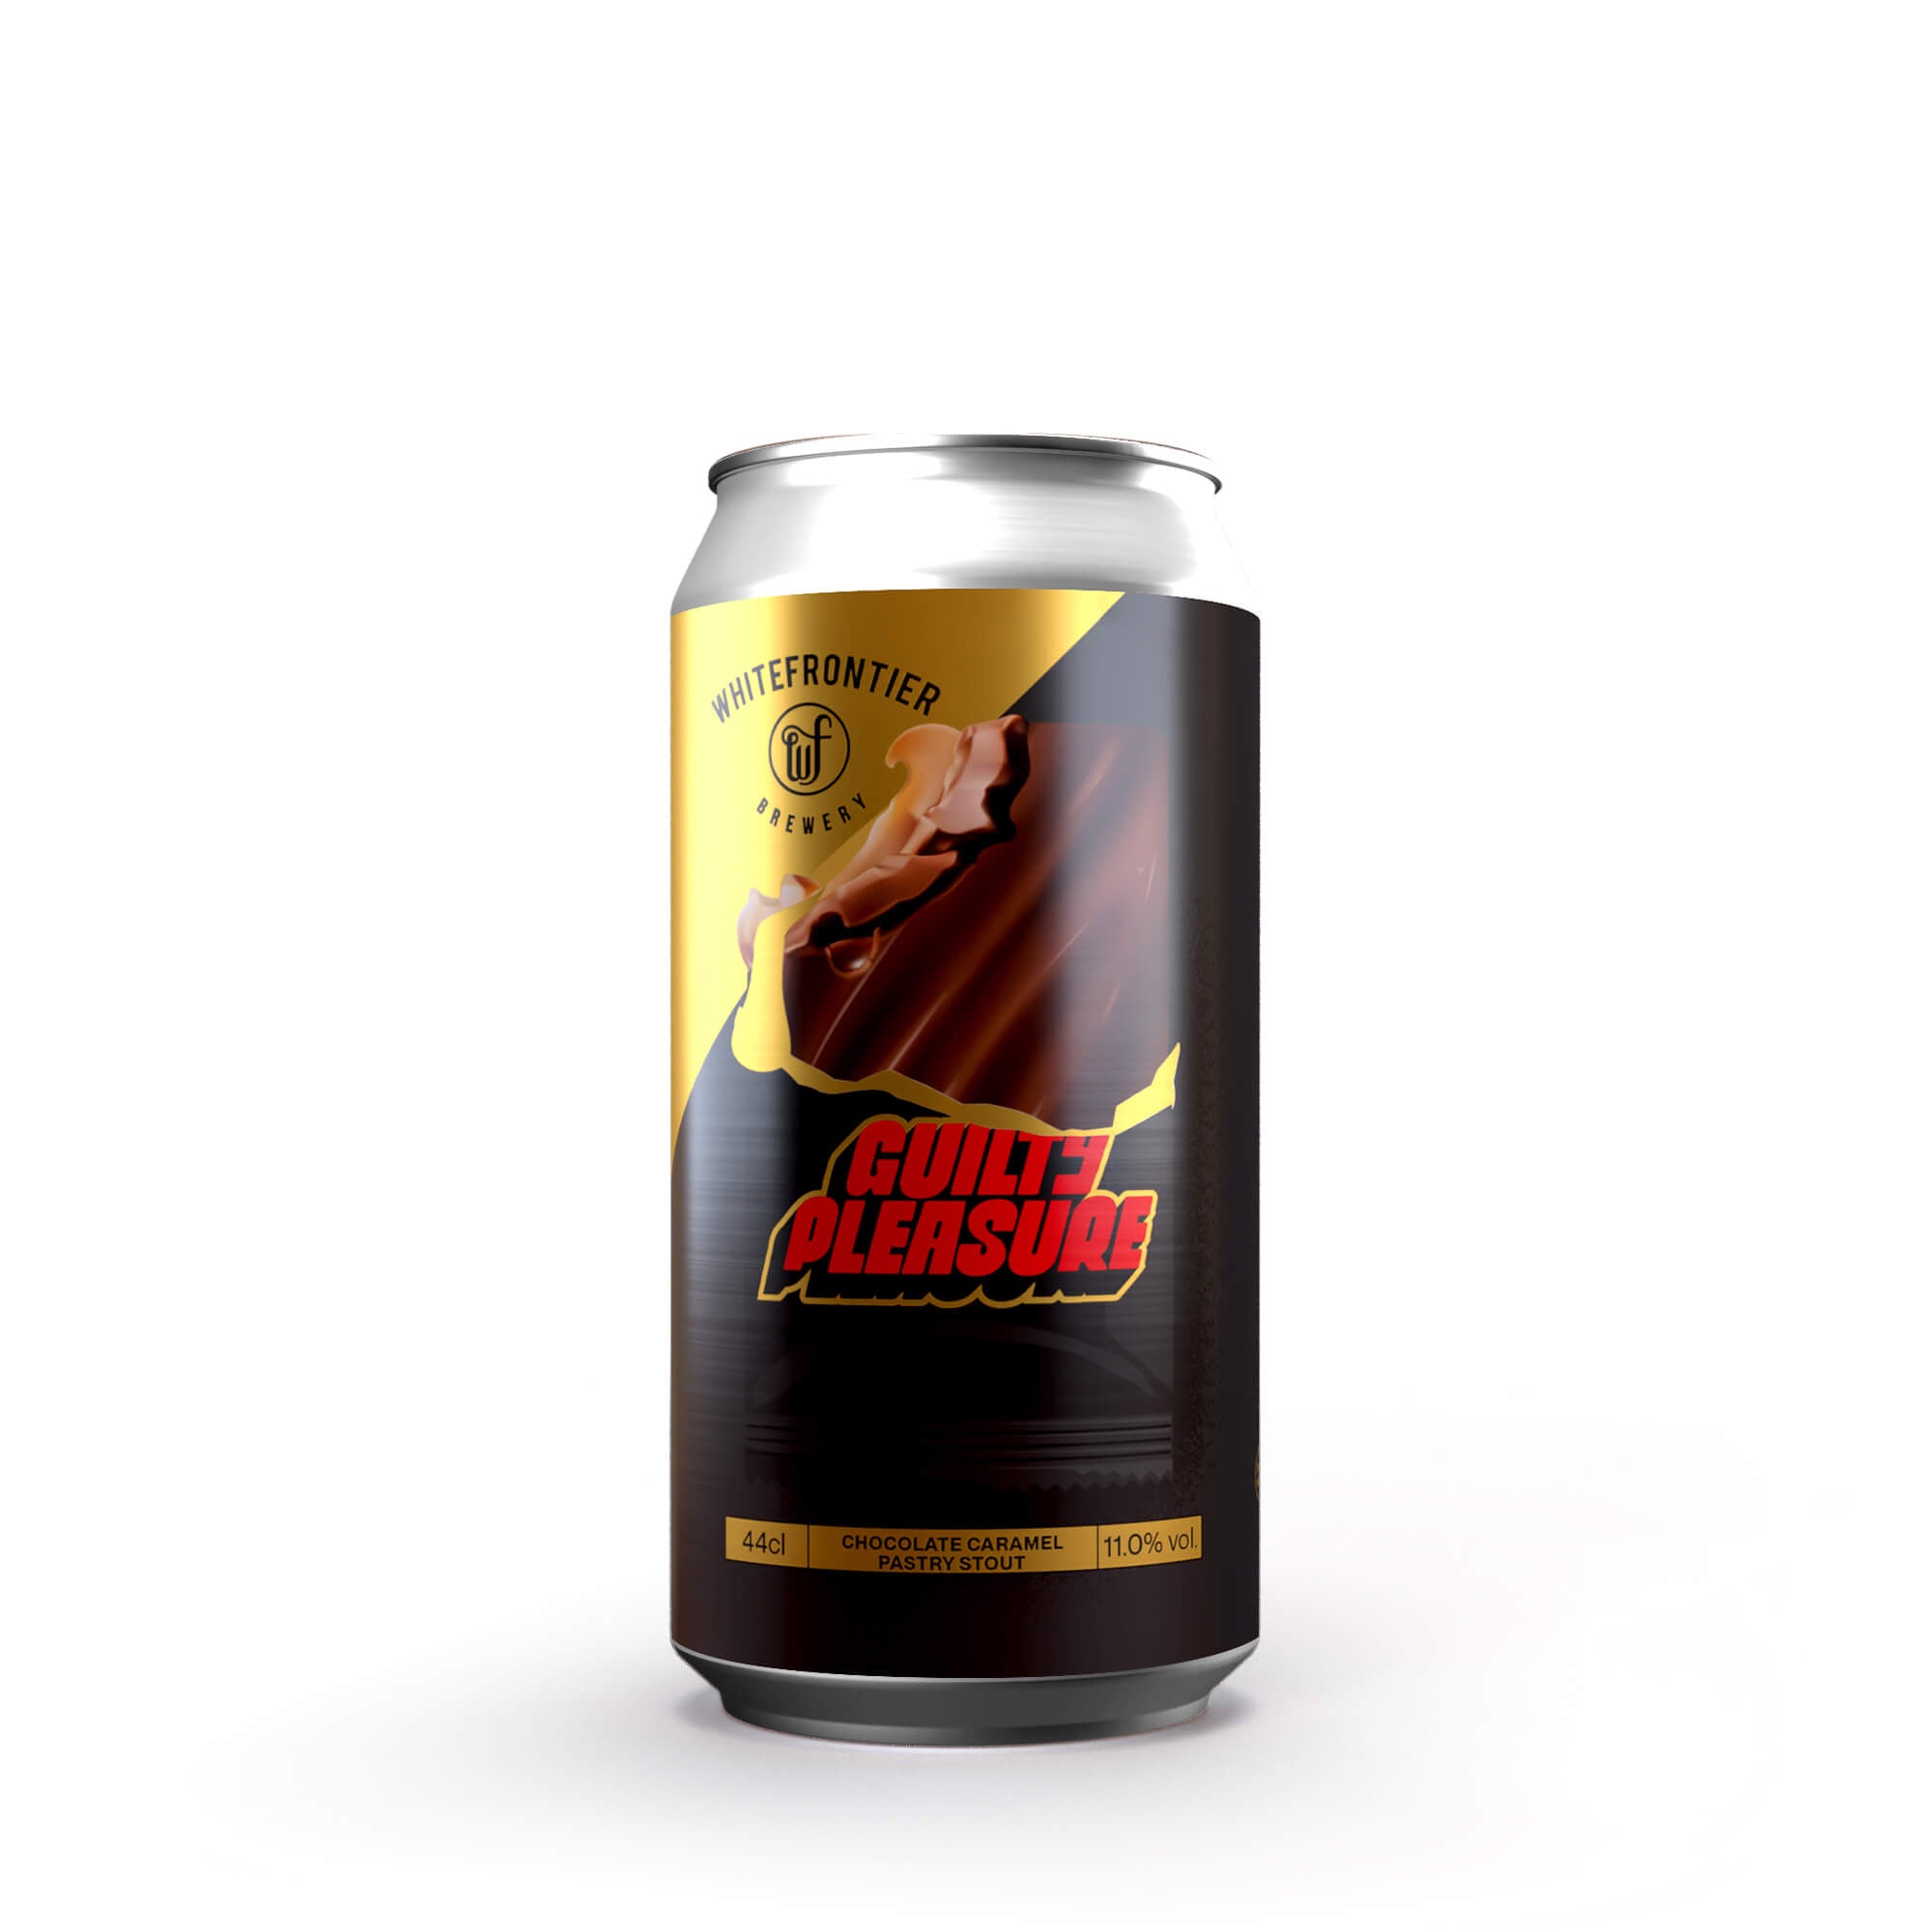 Canette de bière stout noire rouge et dorée